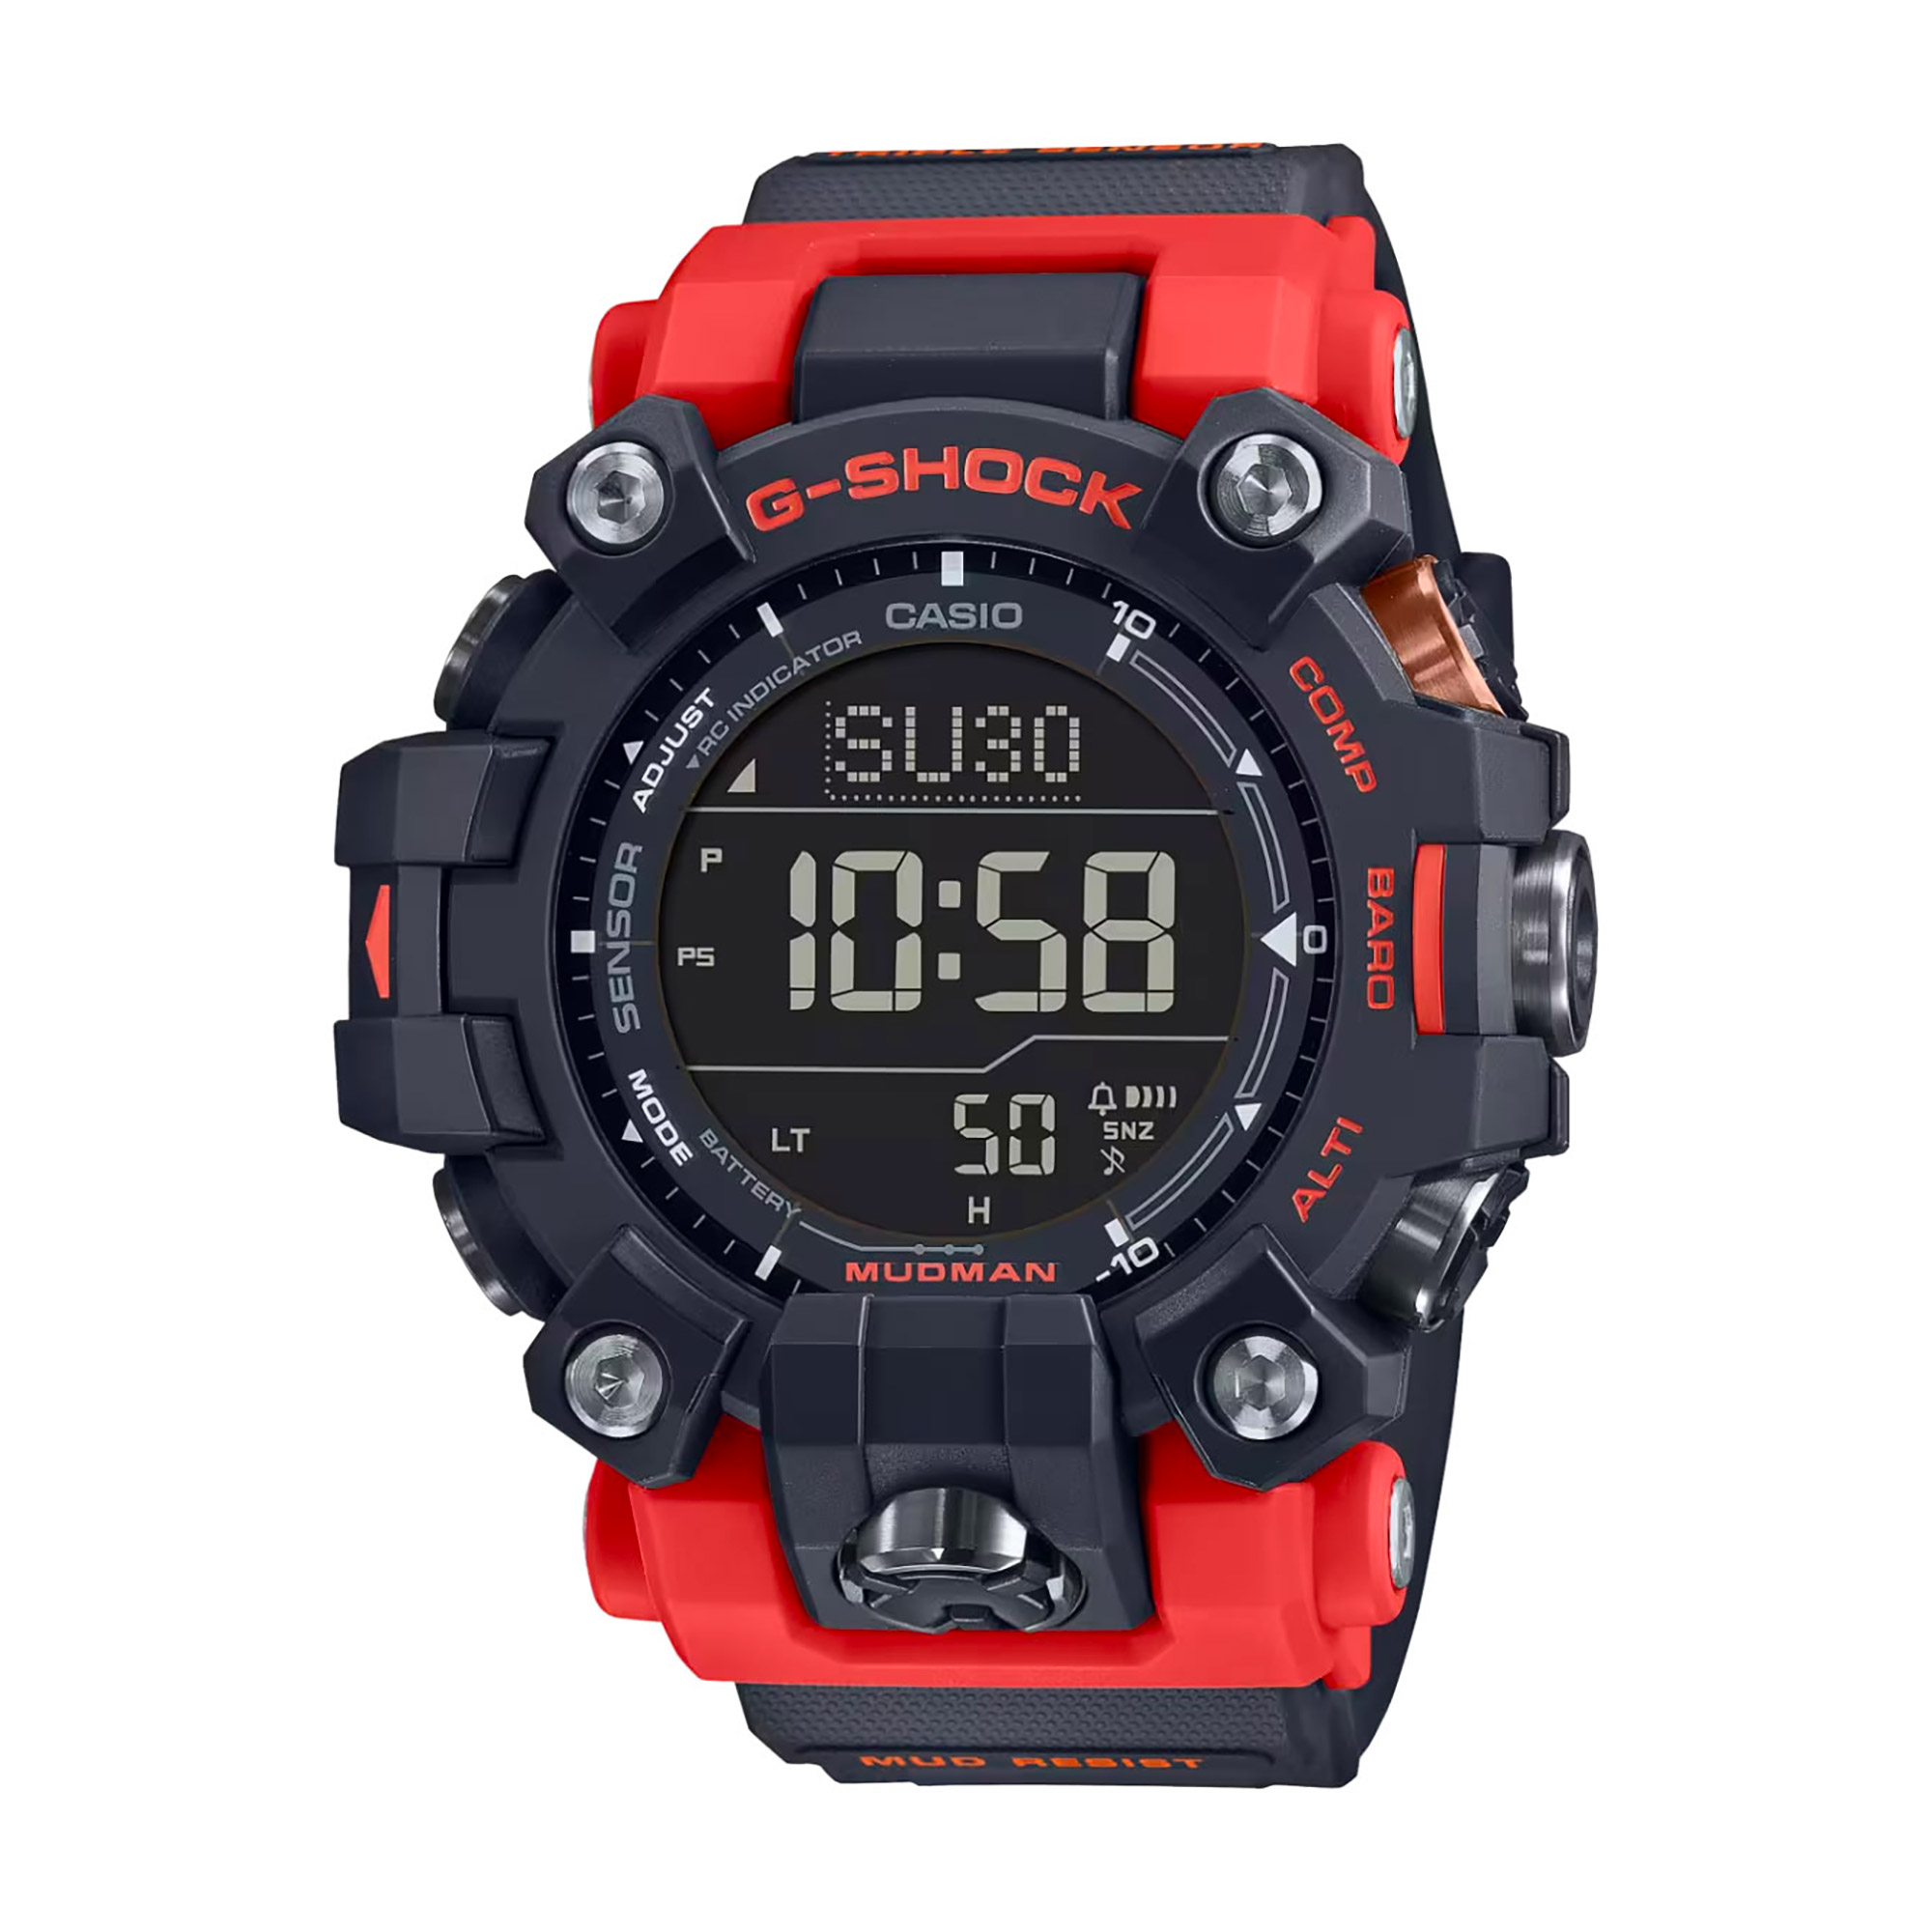 Watch CASIO G-Shock gw-9500-1a4er